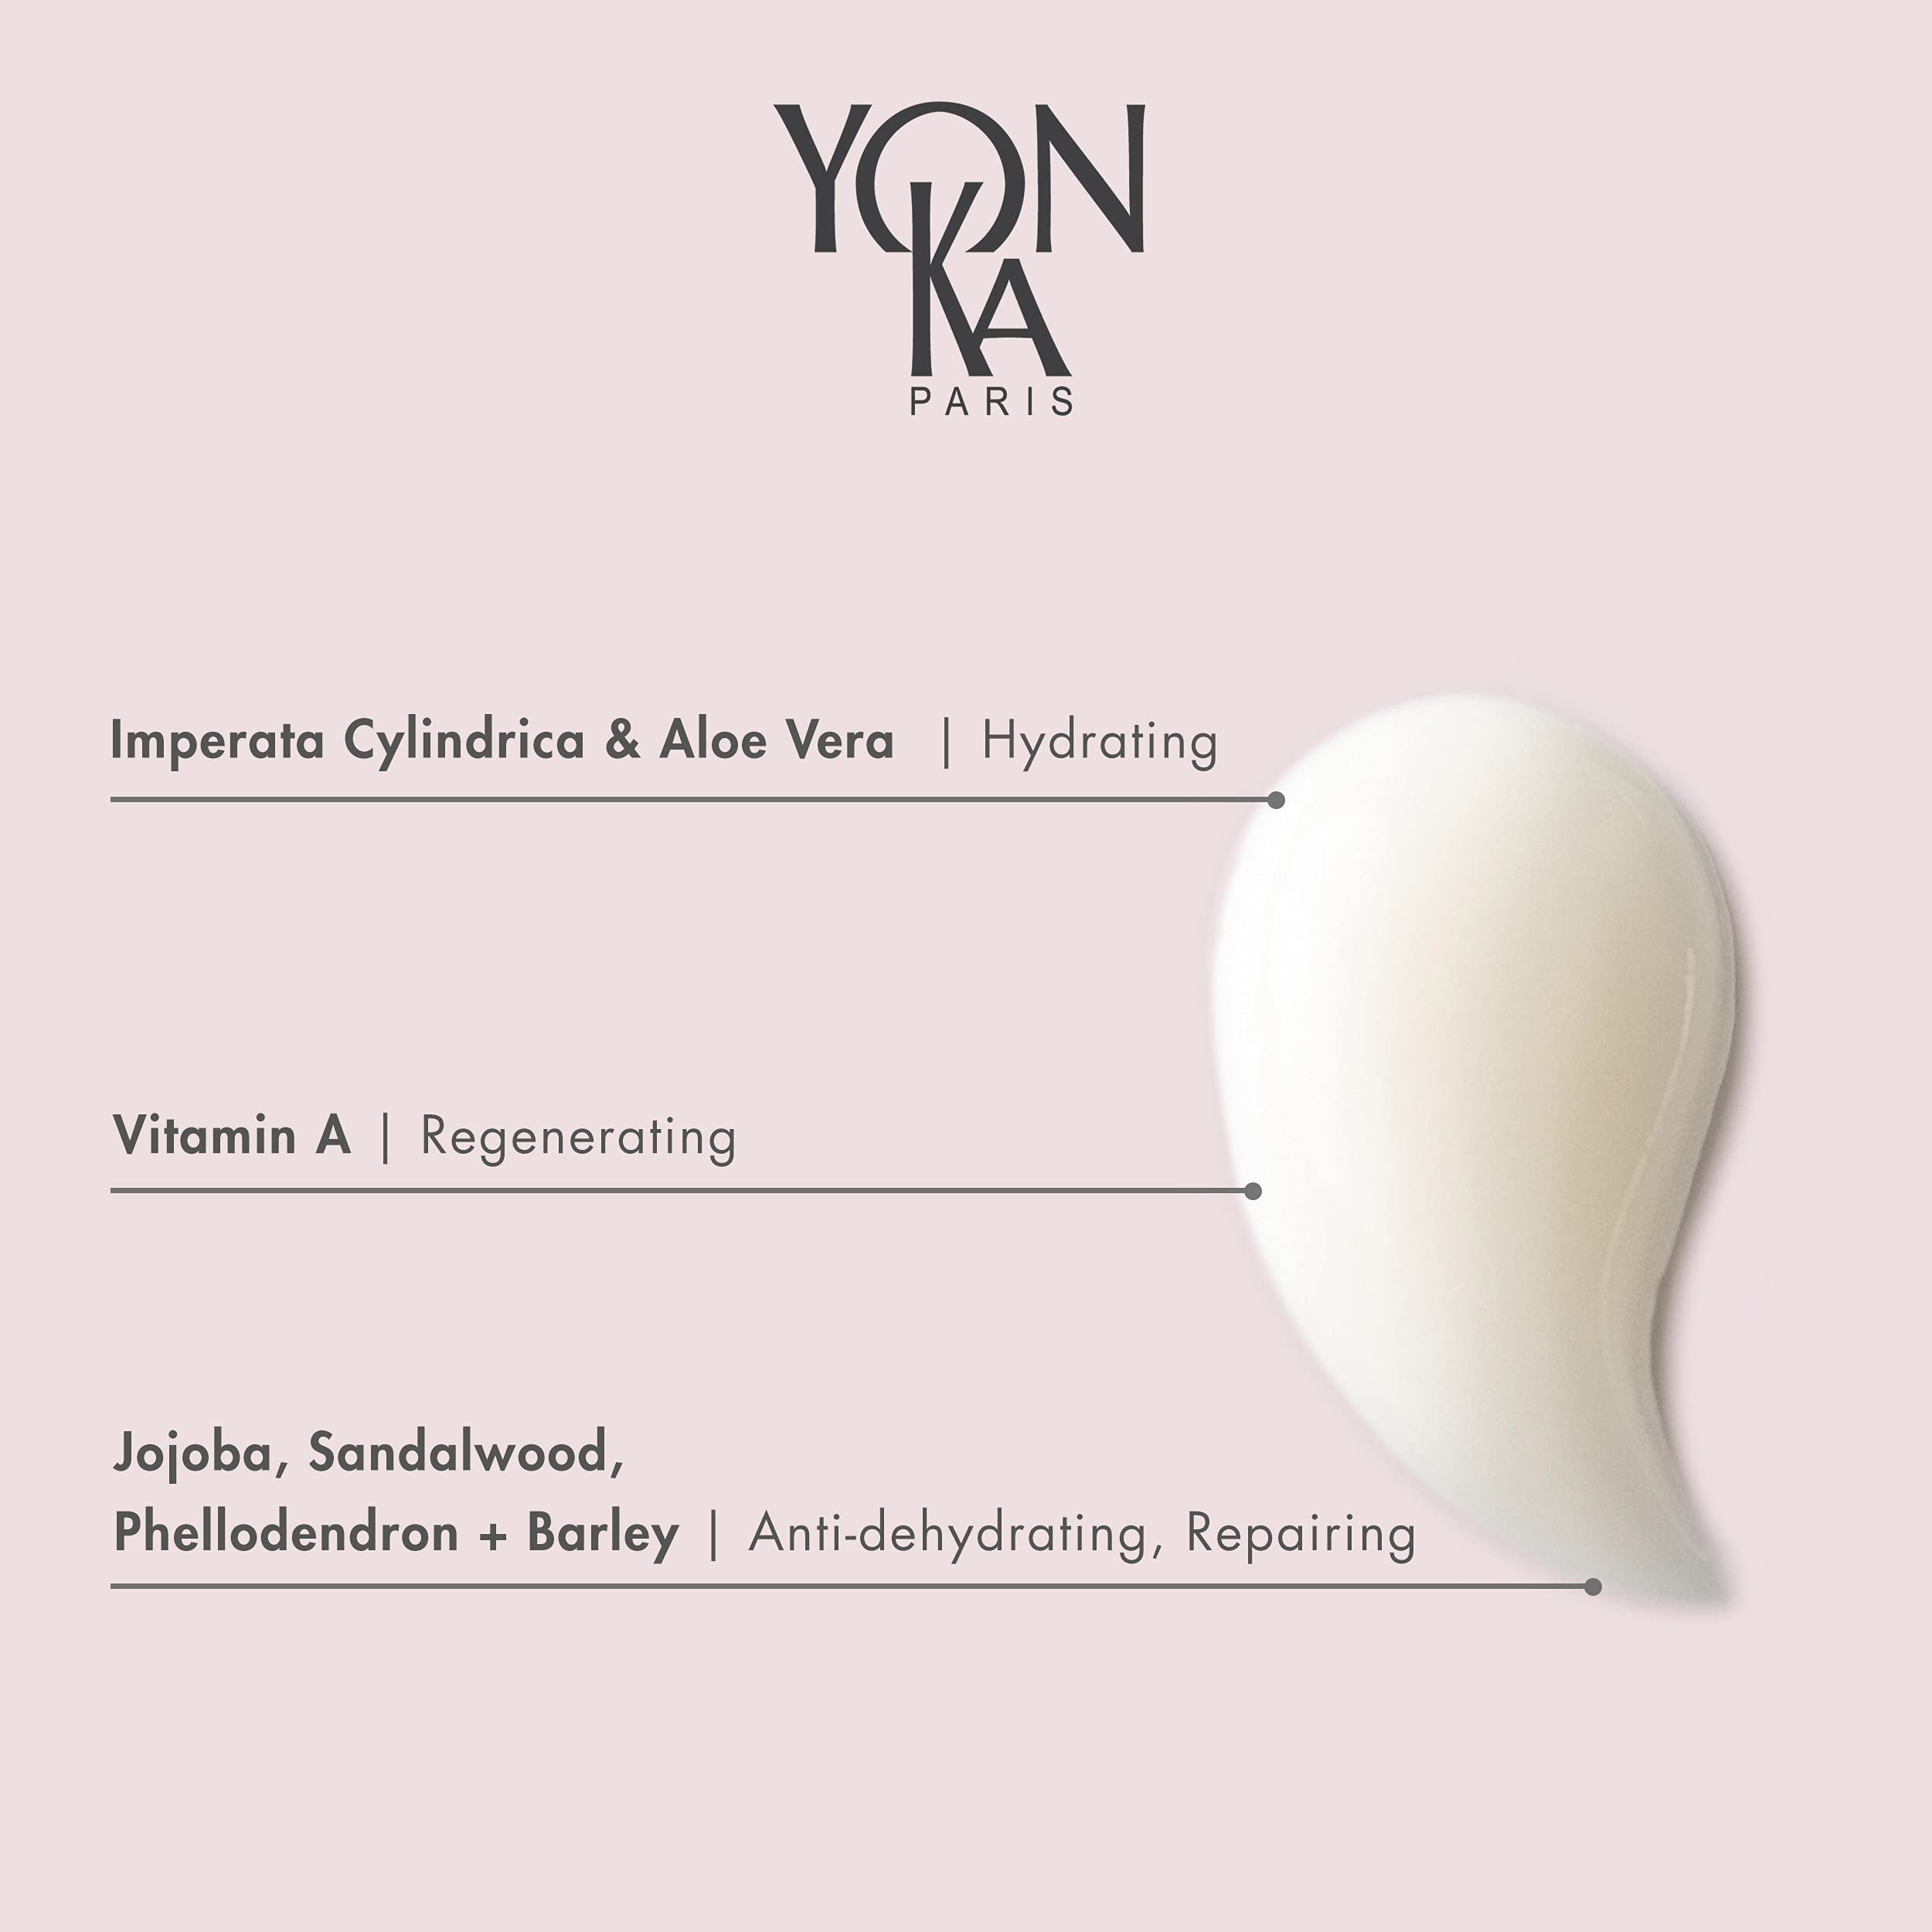 Yon-Ka Hydra No. 1 Masque Hydrating Face Mask with Vitamin C and Aloe Vera